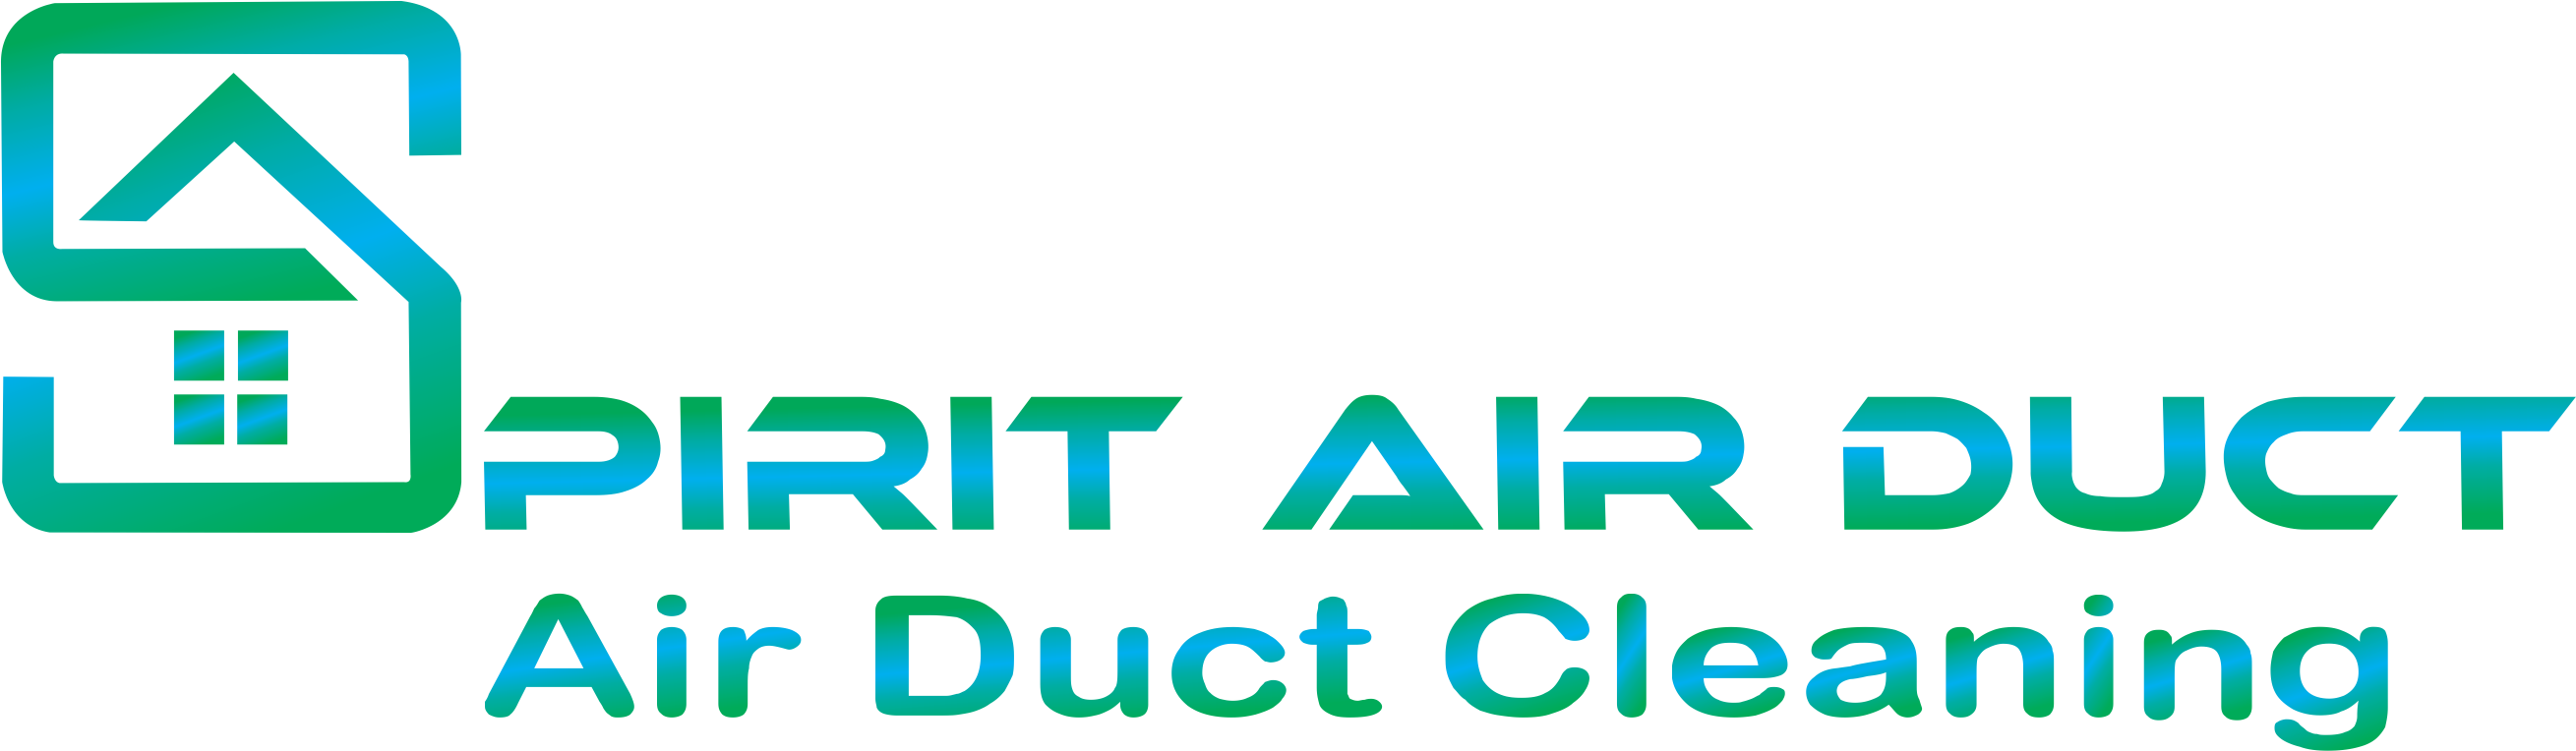 Spirit Air Duct